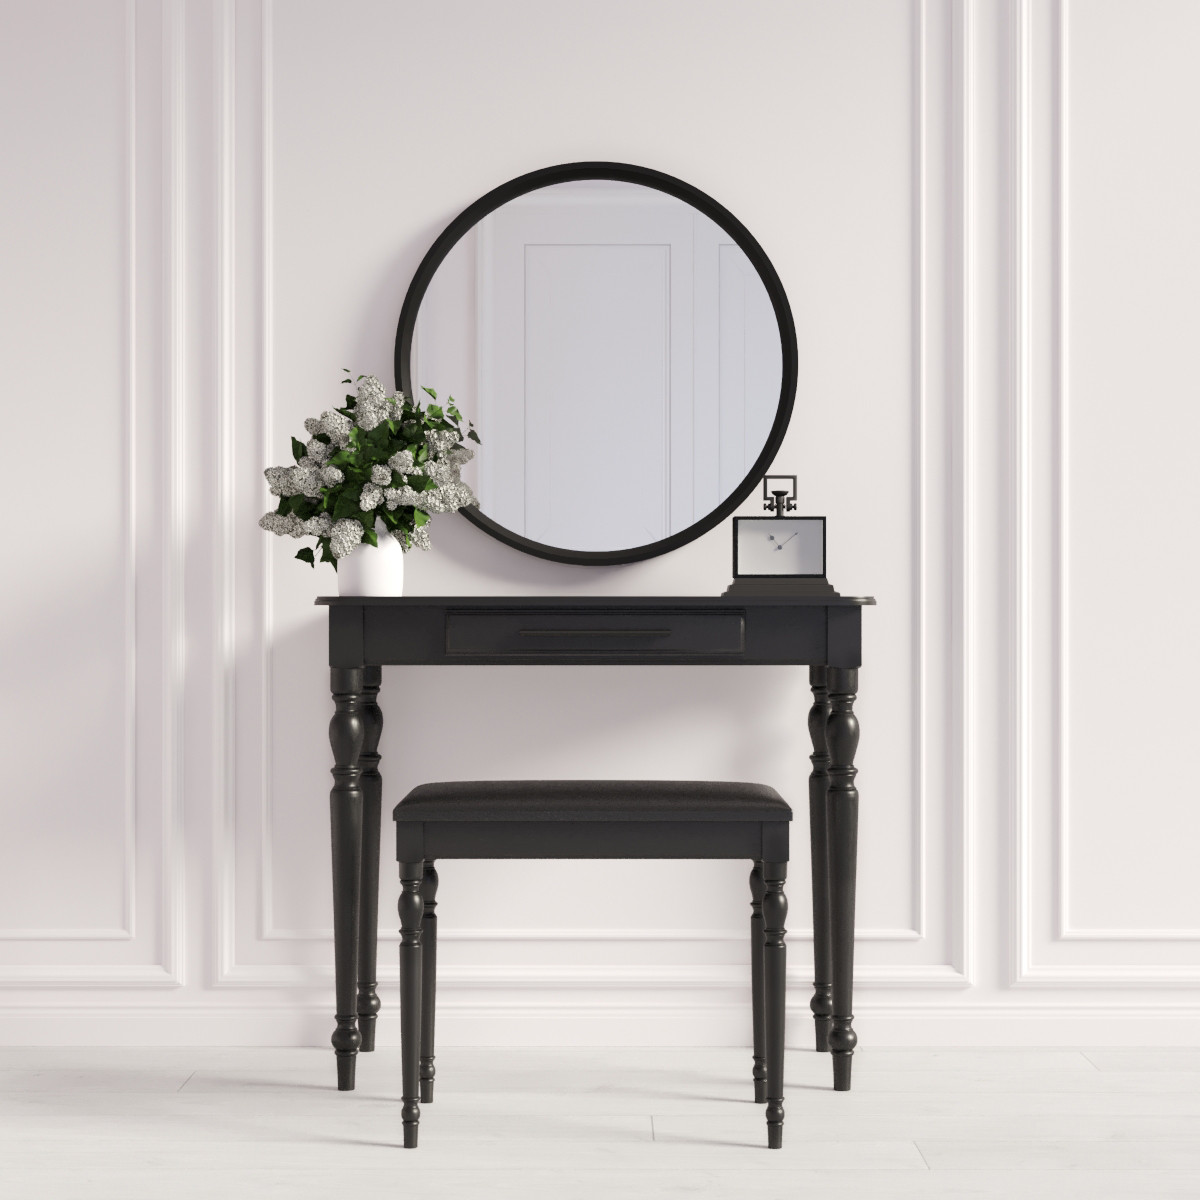 Туалетный столик с зеркалом и банкеткой "Ренессанс Чёрный", фото 1